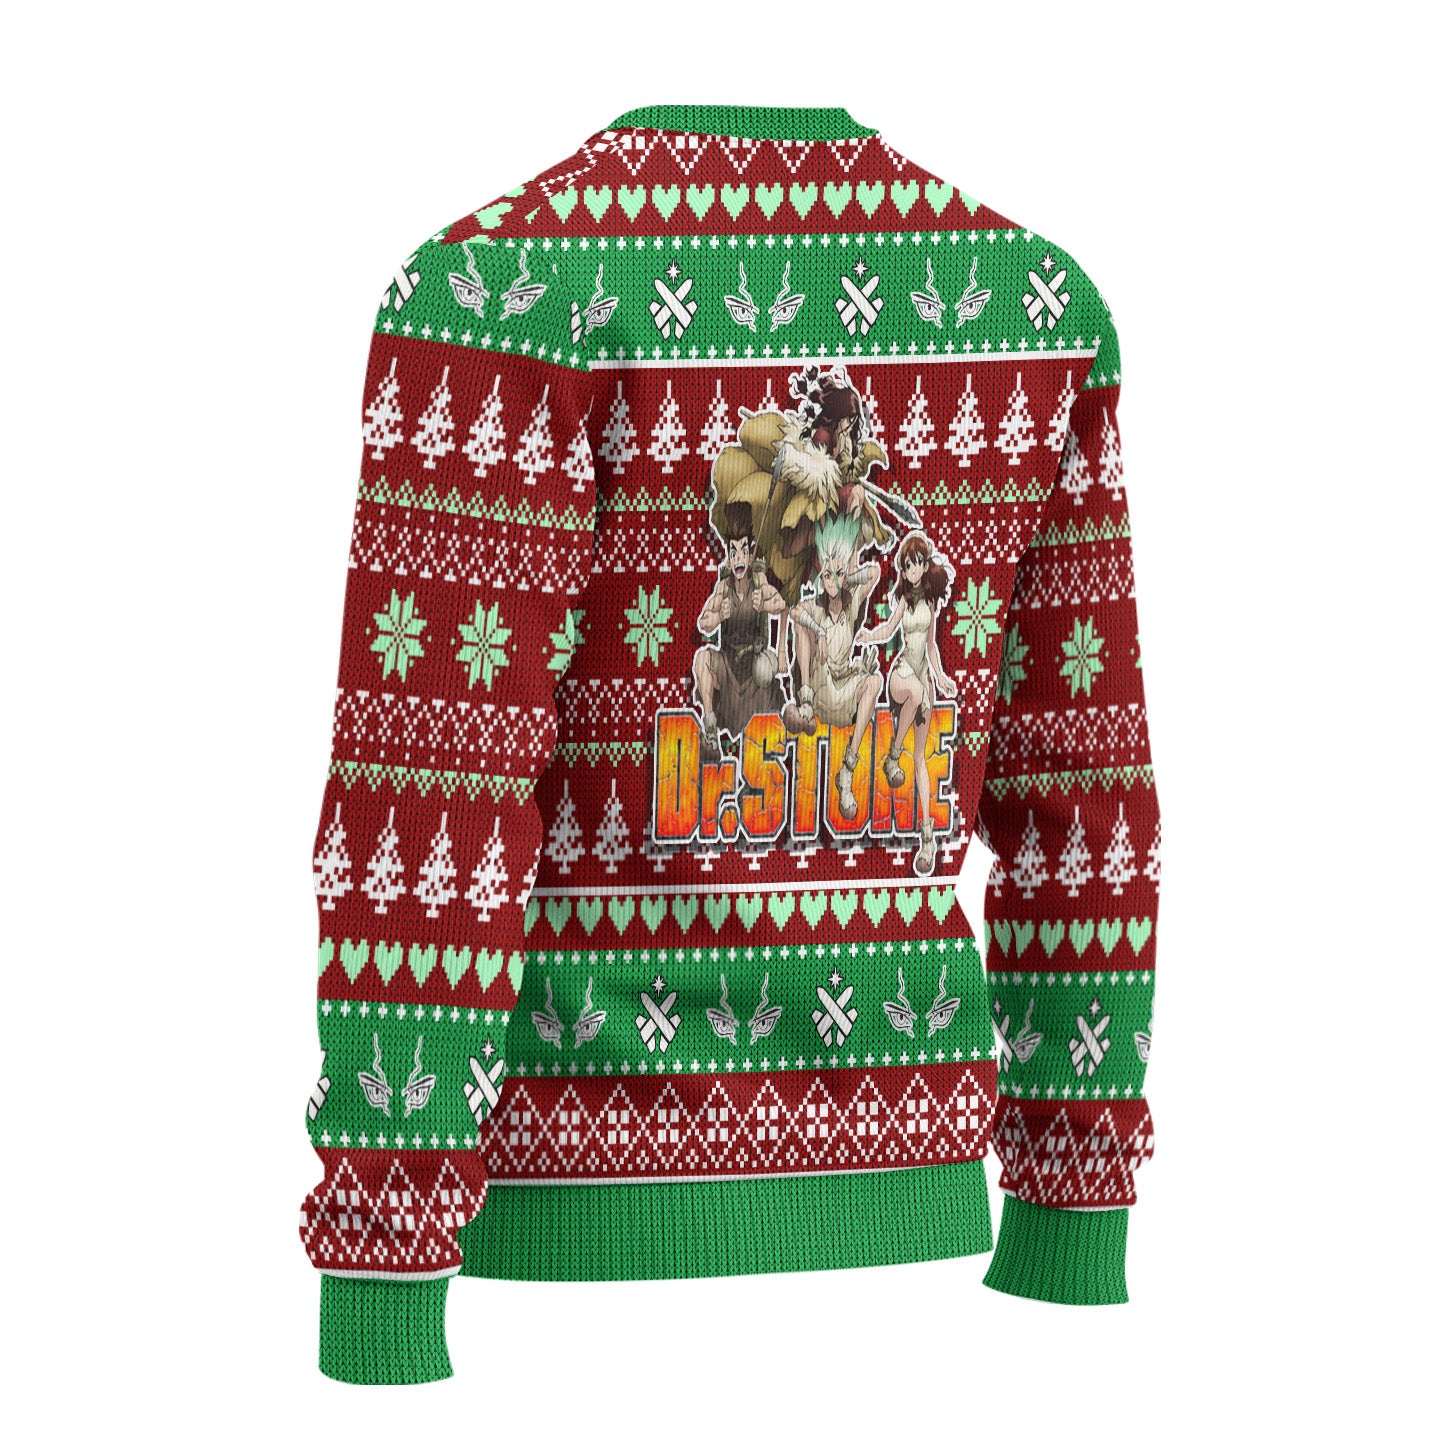 Senku x Tsukasa Anime Ugly Christmas Sweater Custom Dr Stone New Design